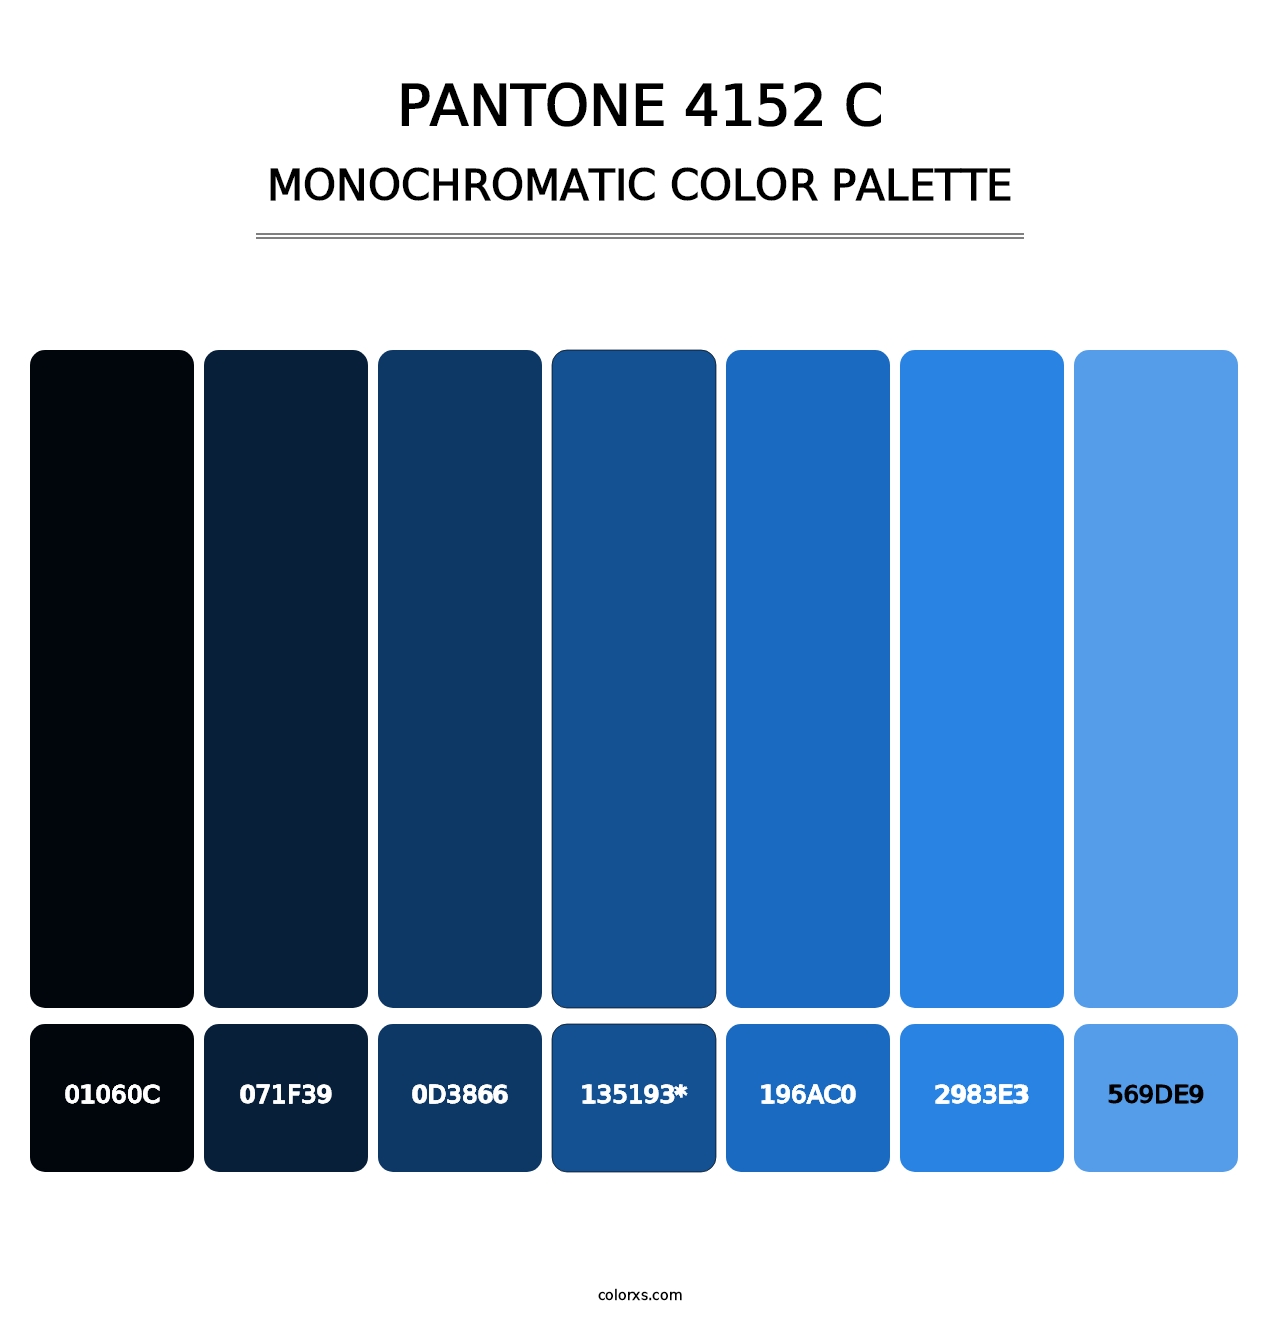 PANTONE 4152 C - Monochromatic Color Palette